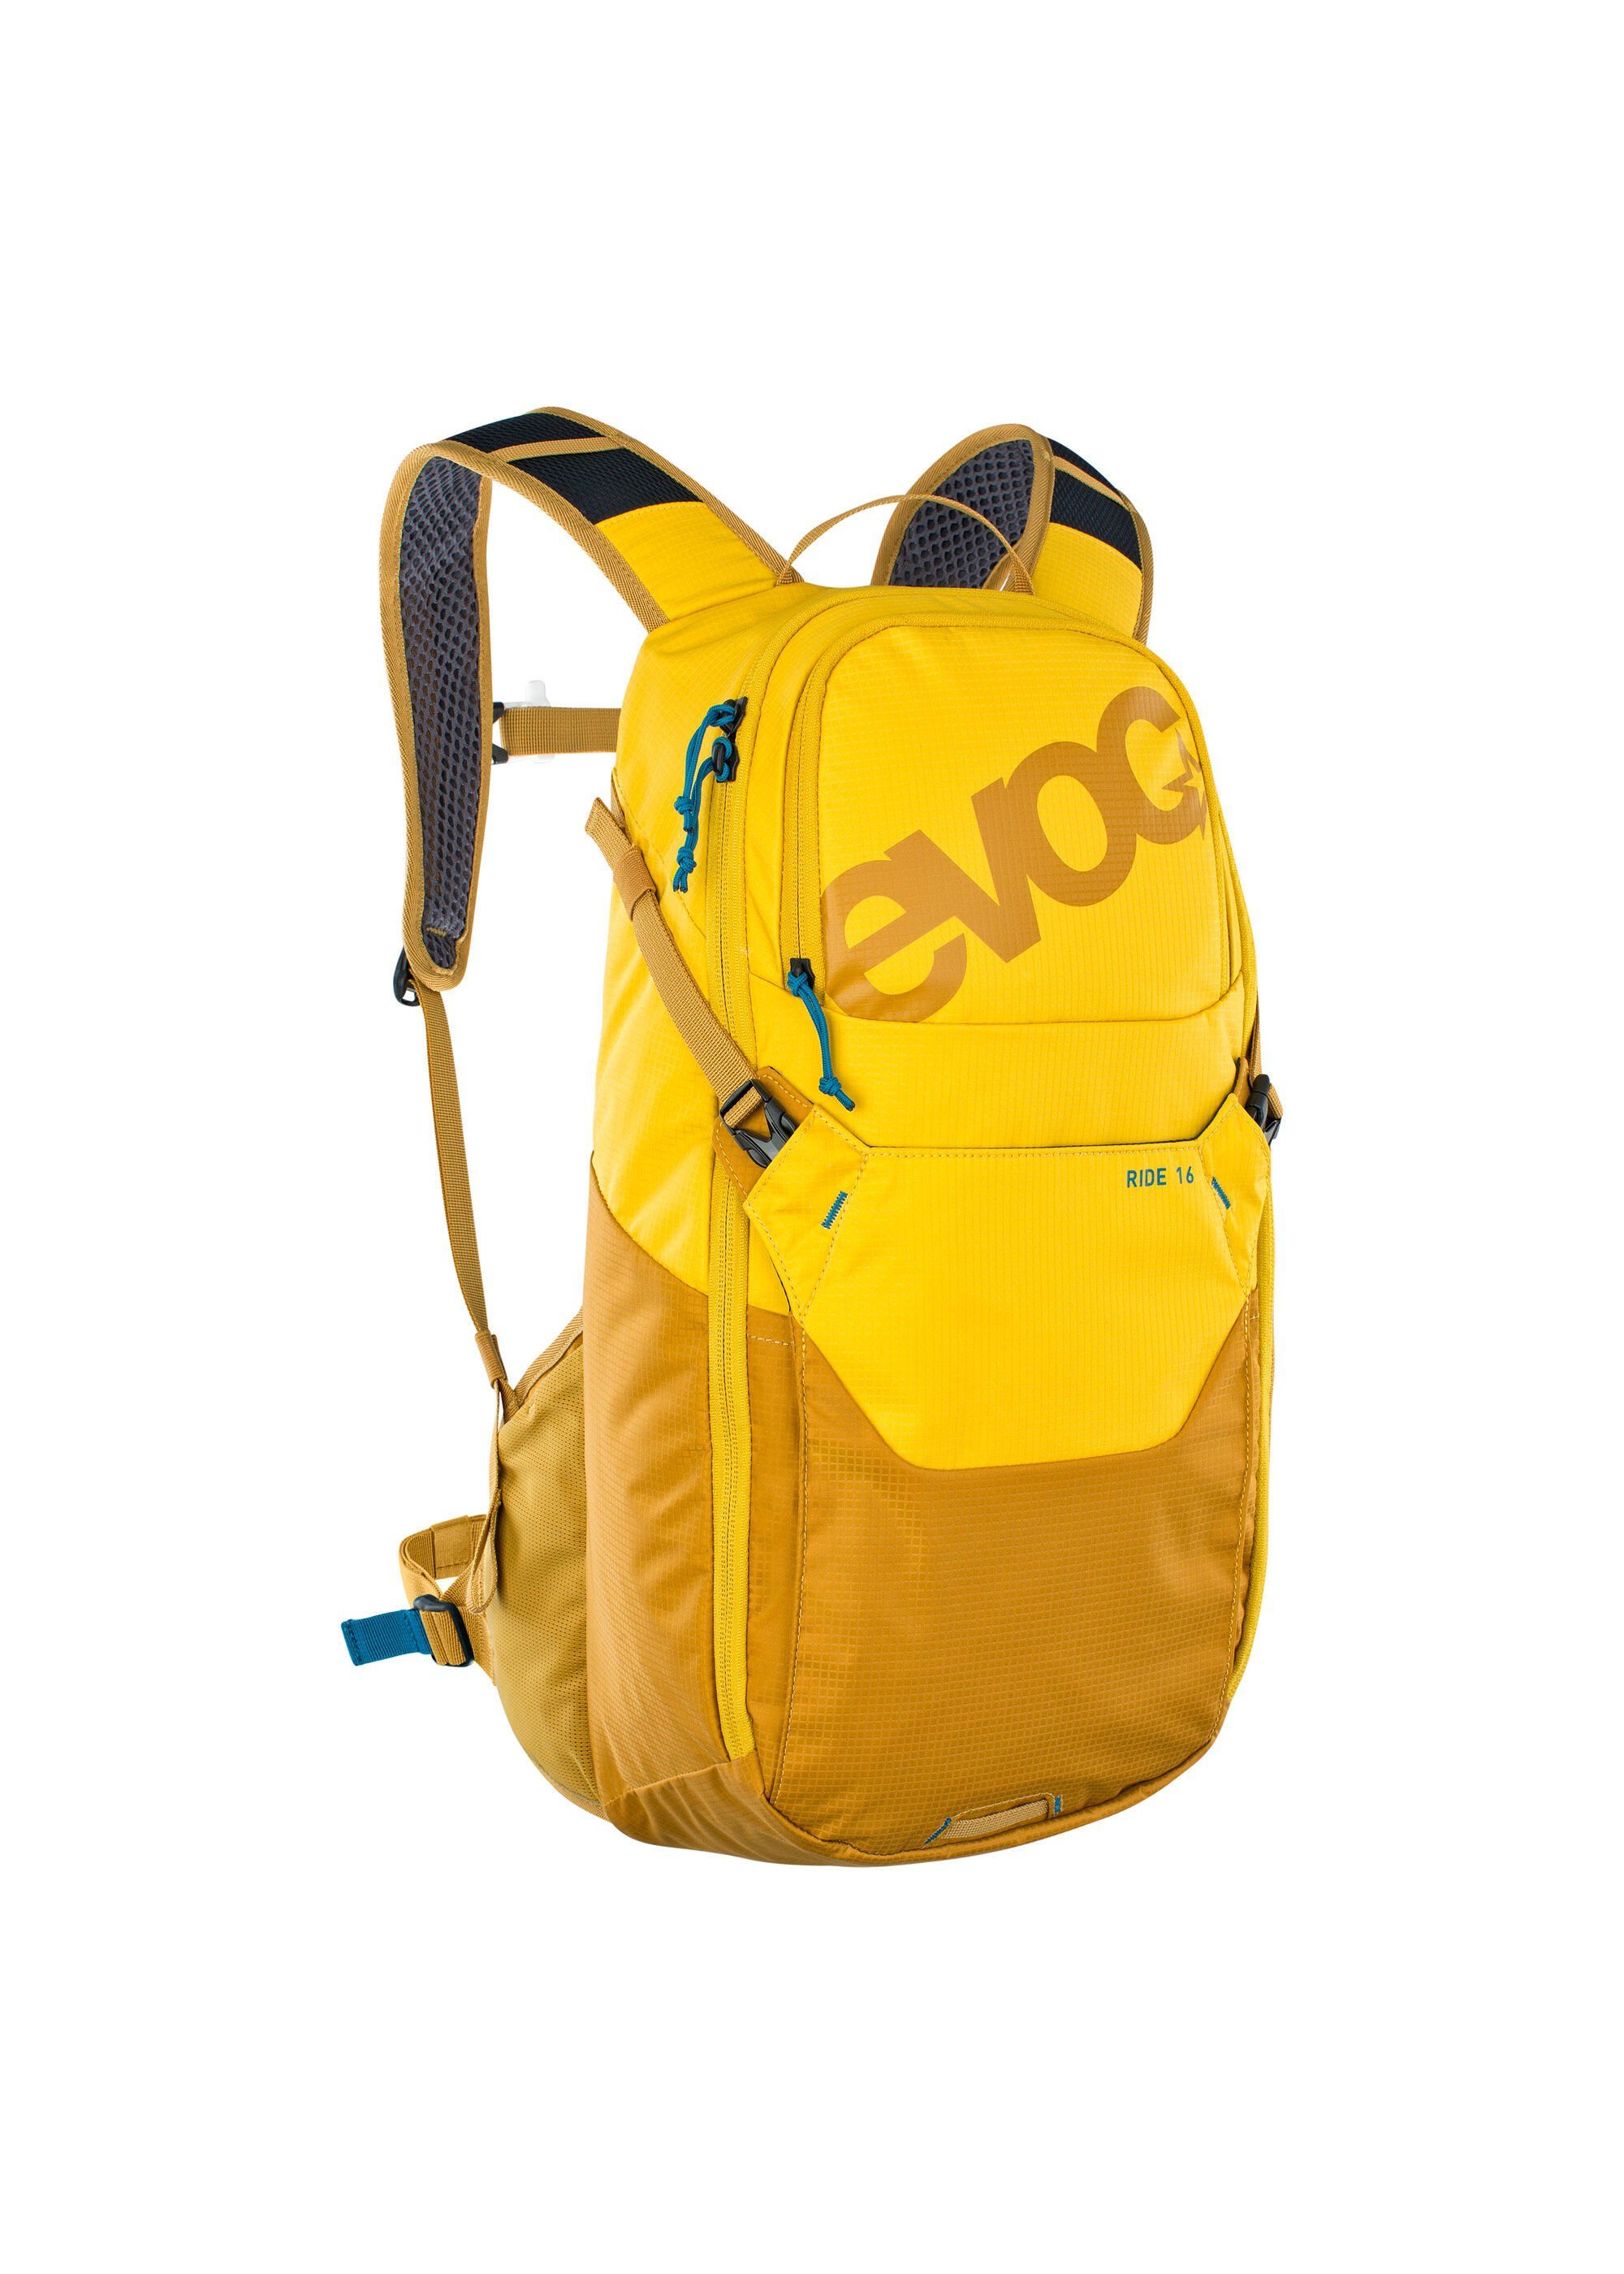 EVOC Cityrucksack (Kein Set), Tages-Rucksack fürs Biken und den Alltag gelb